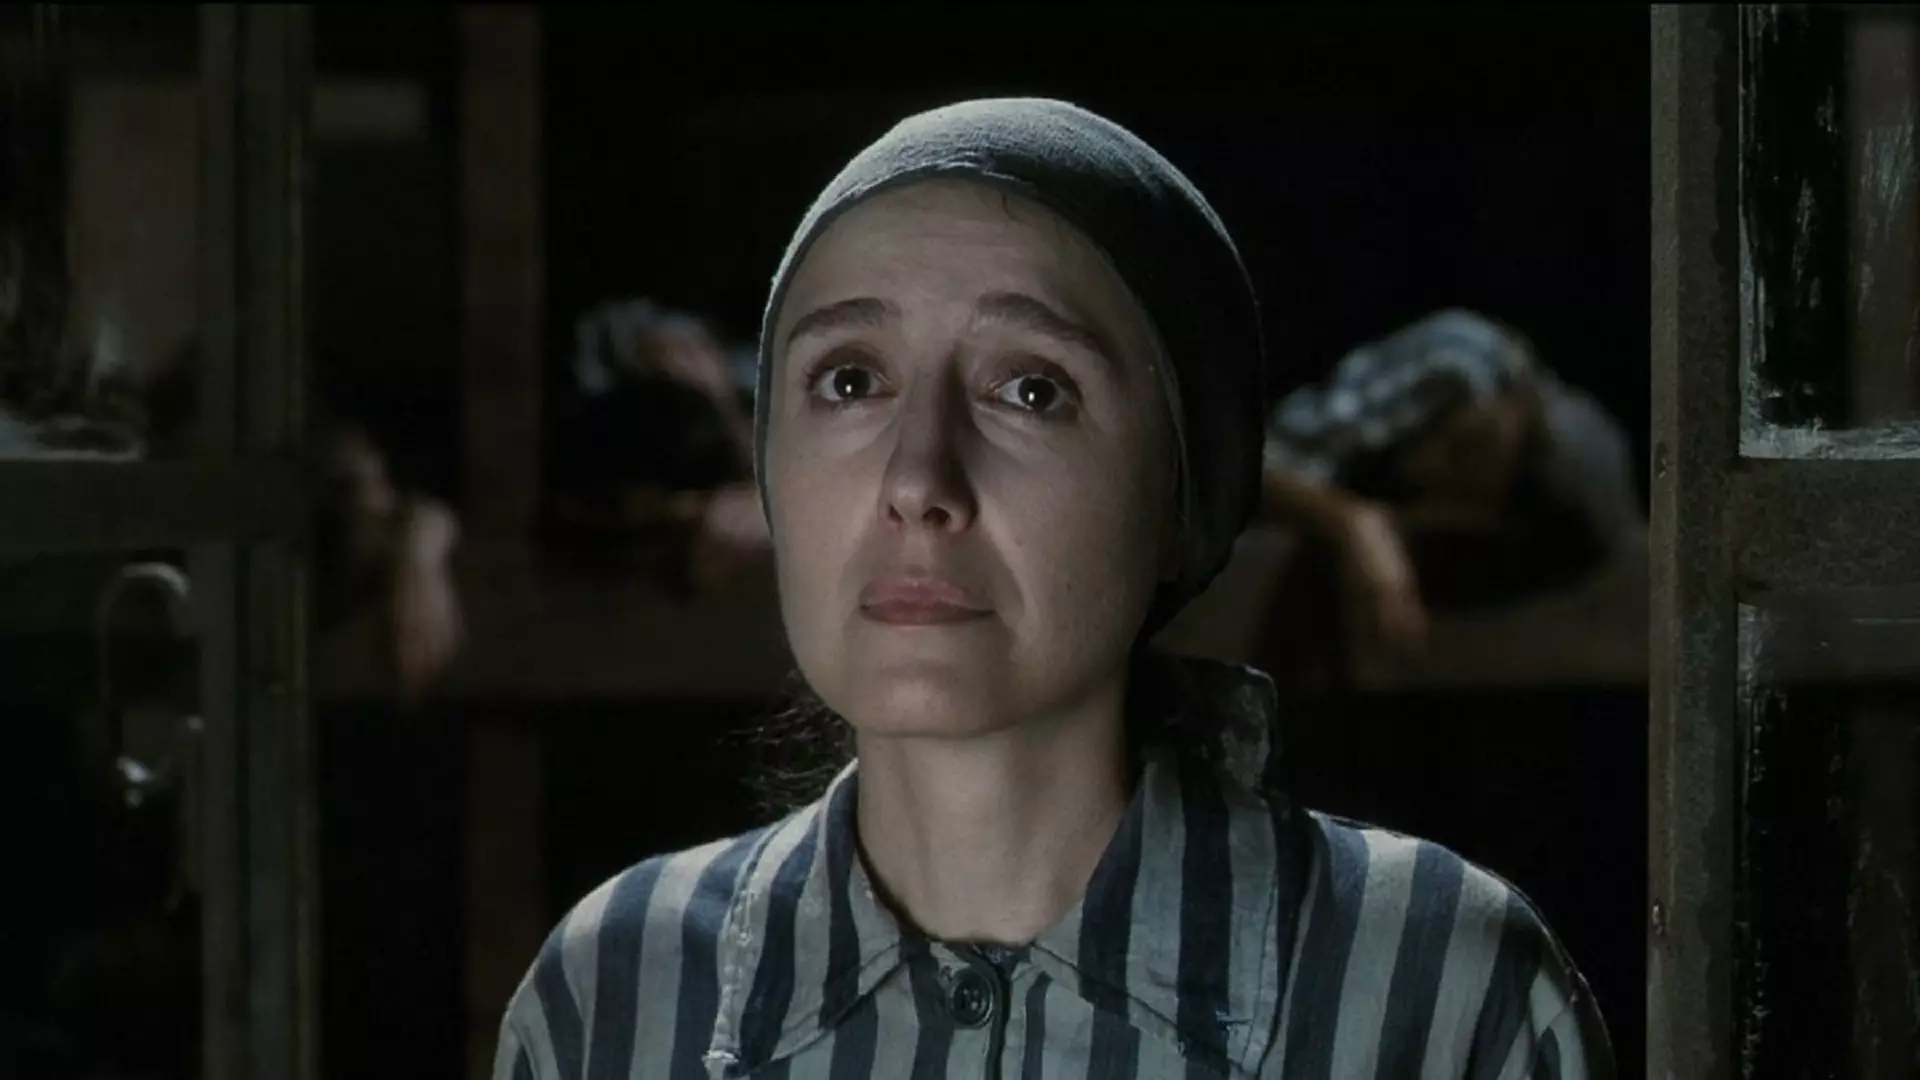 نیکولتا براسچی در اردوگاه یهودیان در فیلم زندگی زیباست